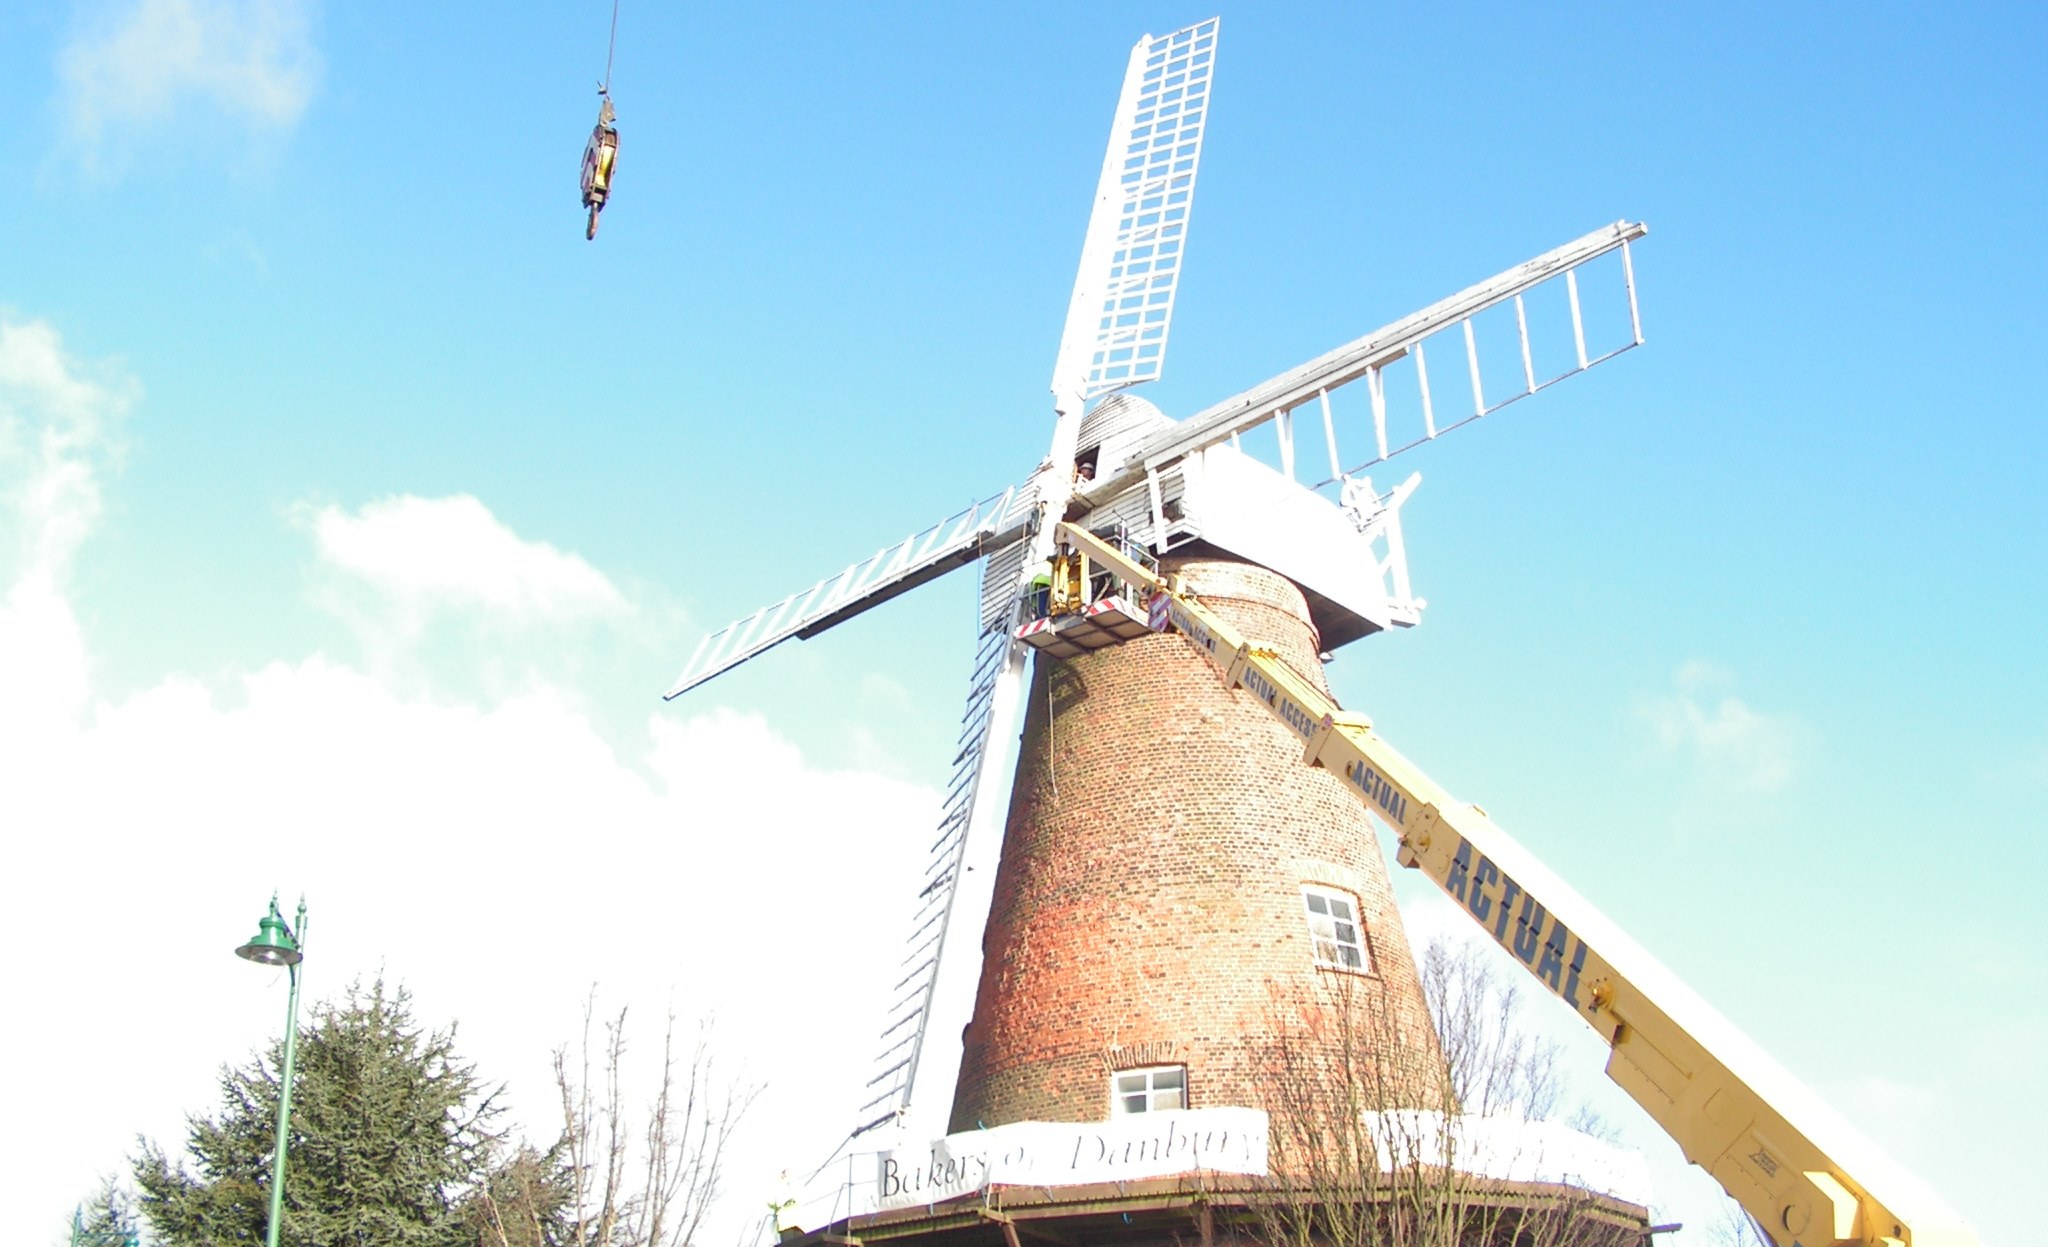 Windmill restoration